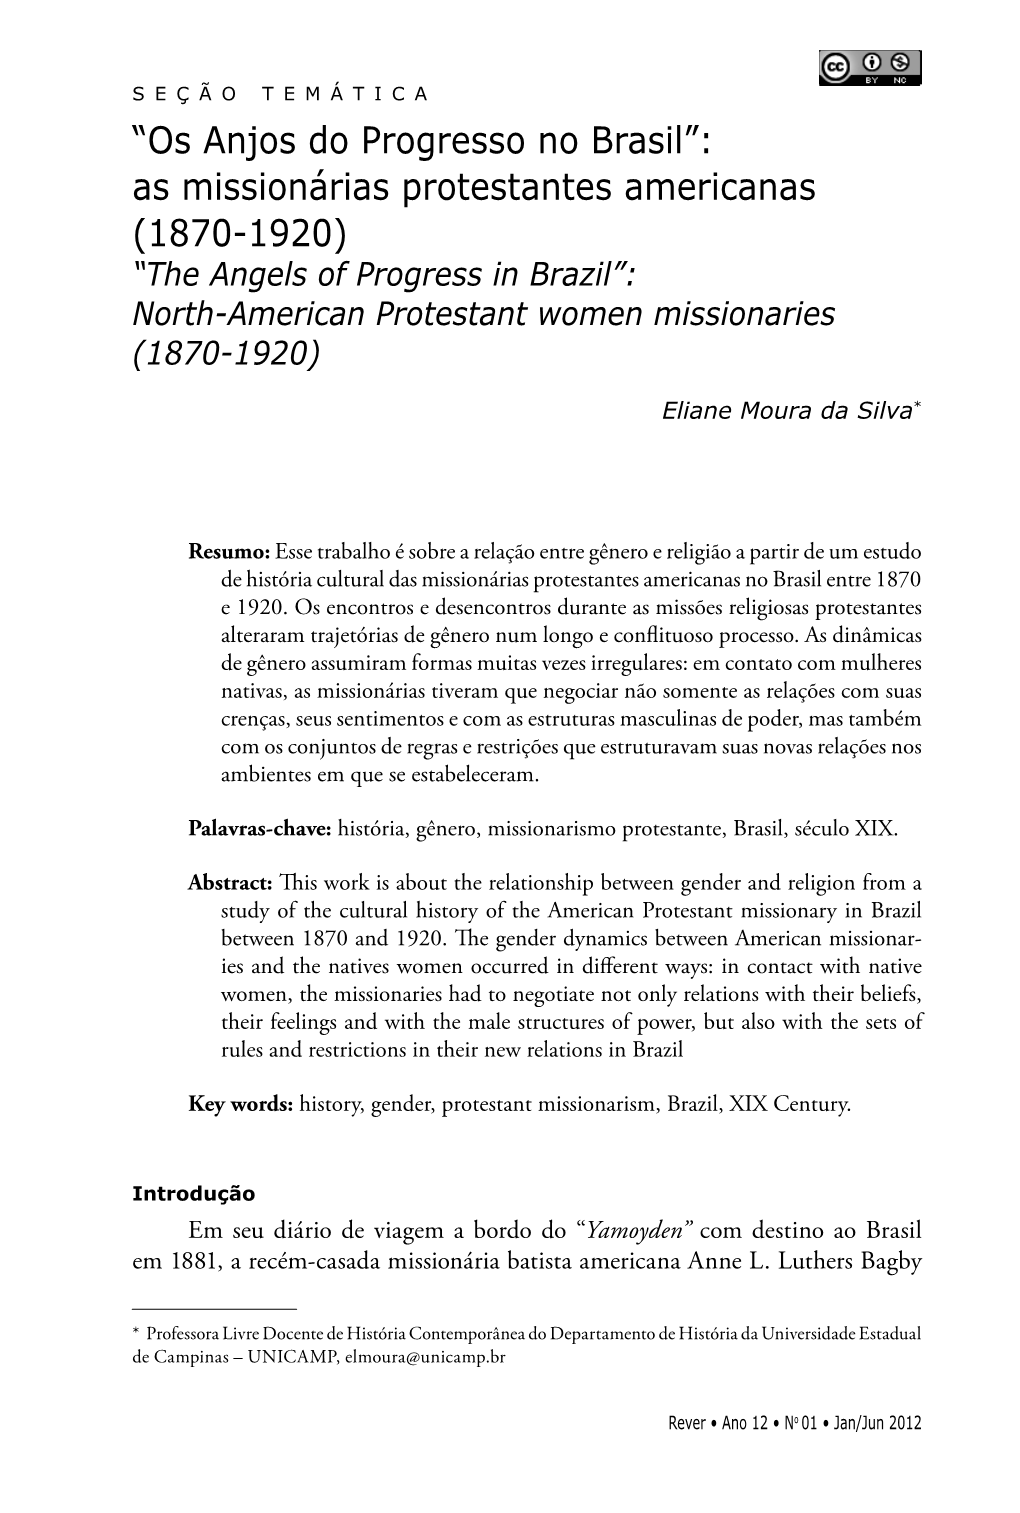 “Os Anjos Do Progresso No Brasil”: As Missionárias Protestantes Americanas (1870-1920)